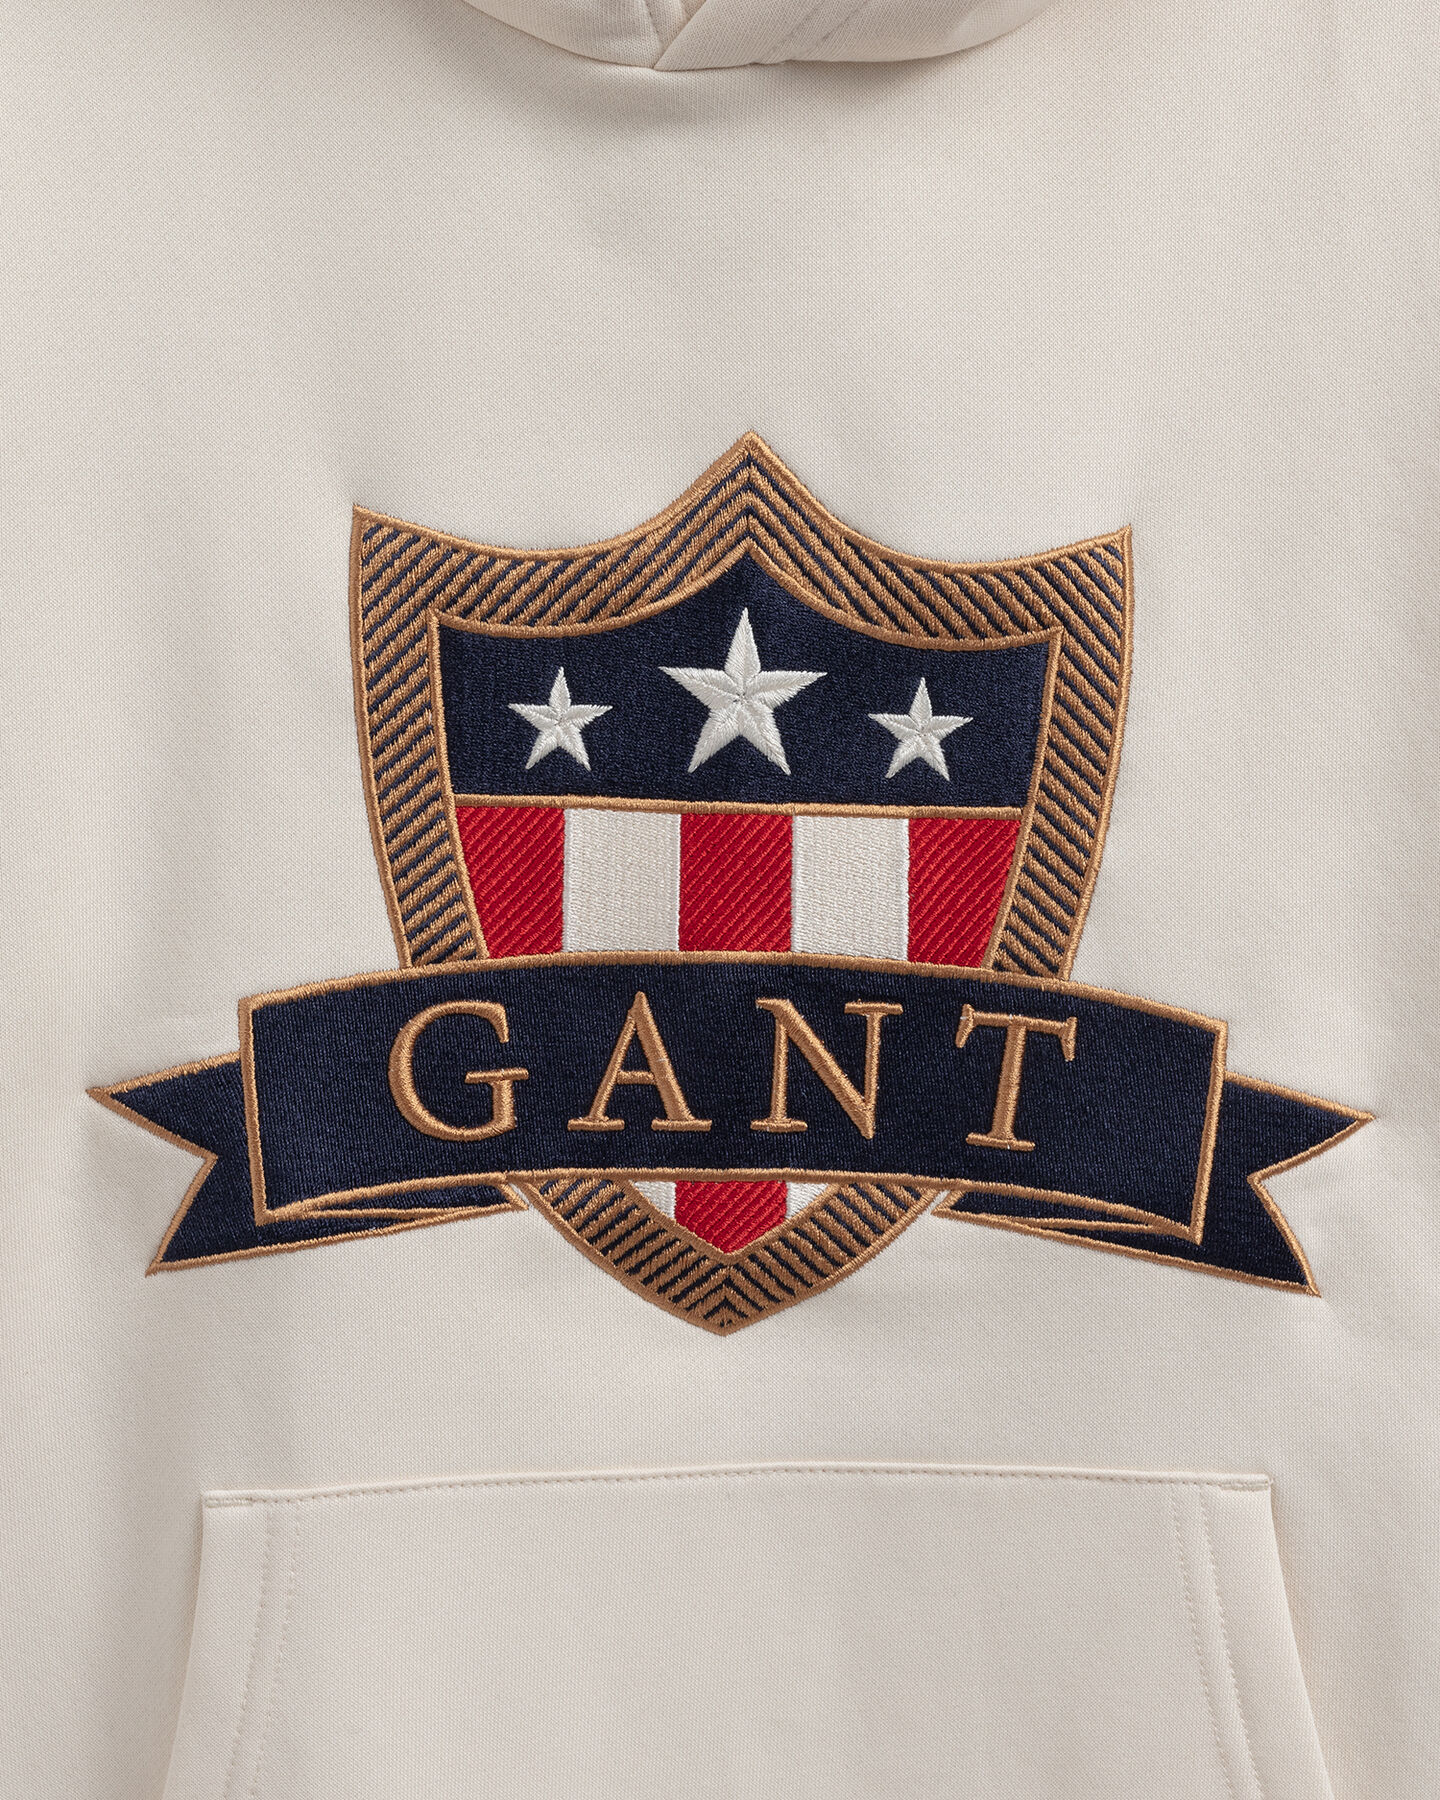 Sites-Gant-NL-Site